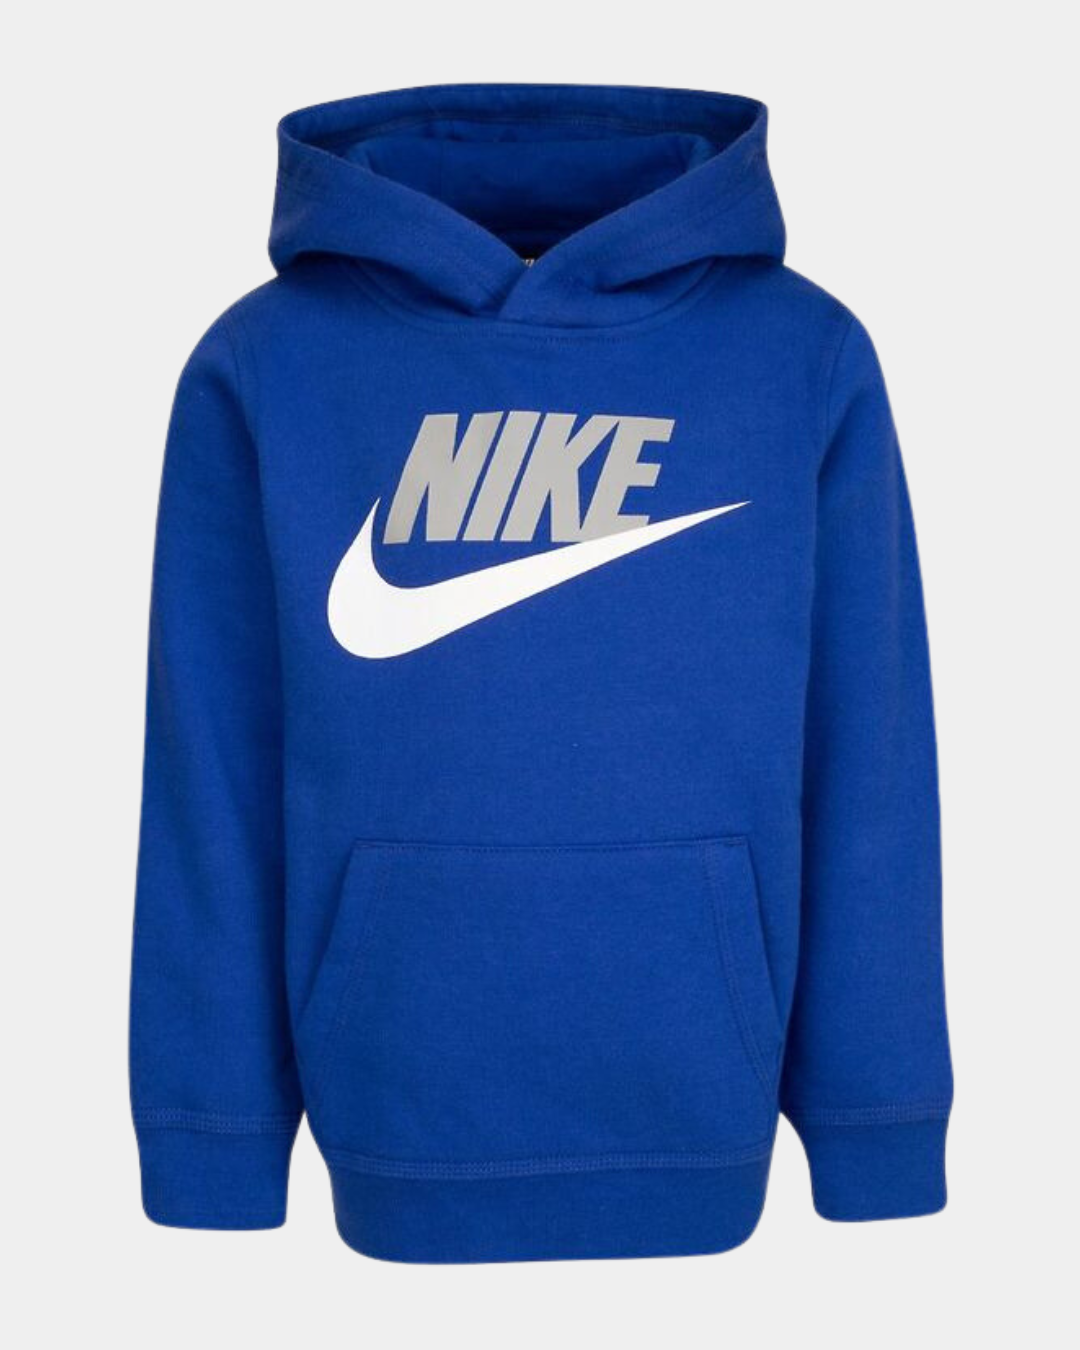 Nike Club Fleece Kinder-Sweatshirt - Blau/Weiß/Grau